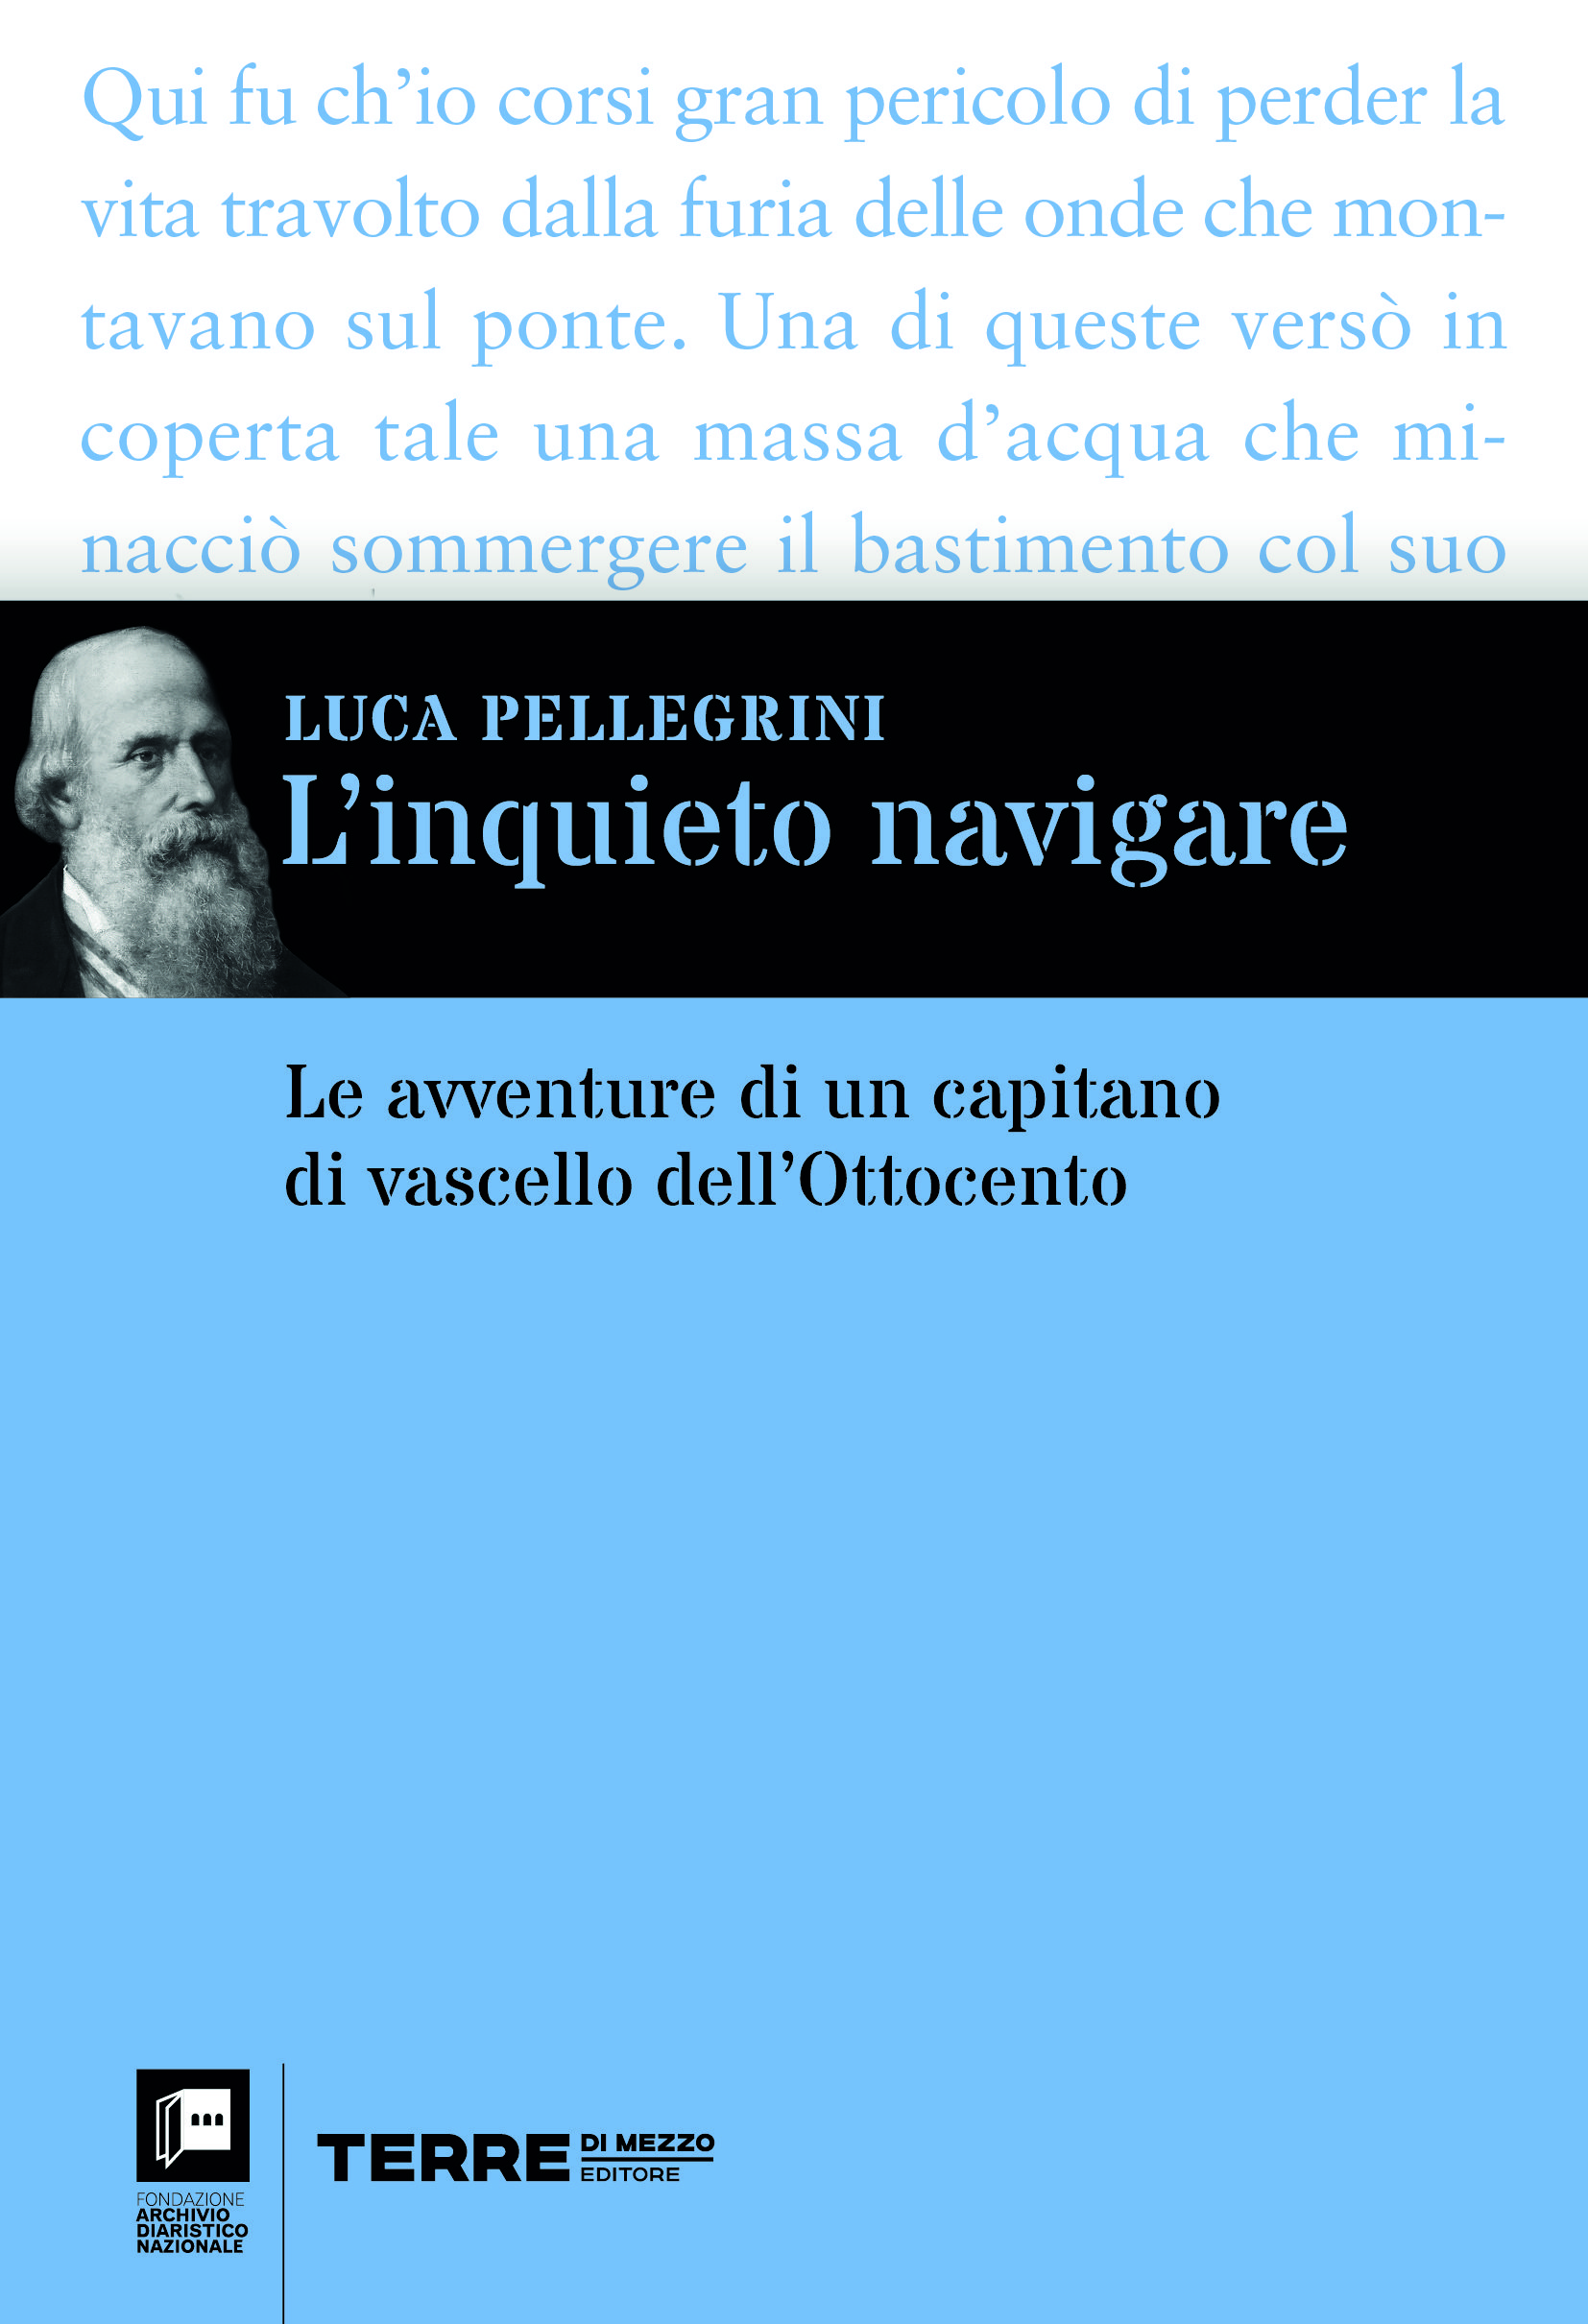 L’INQUIETO NAVIGARE di Luca Pellegrini